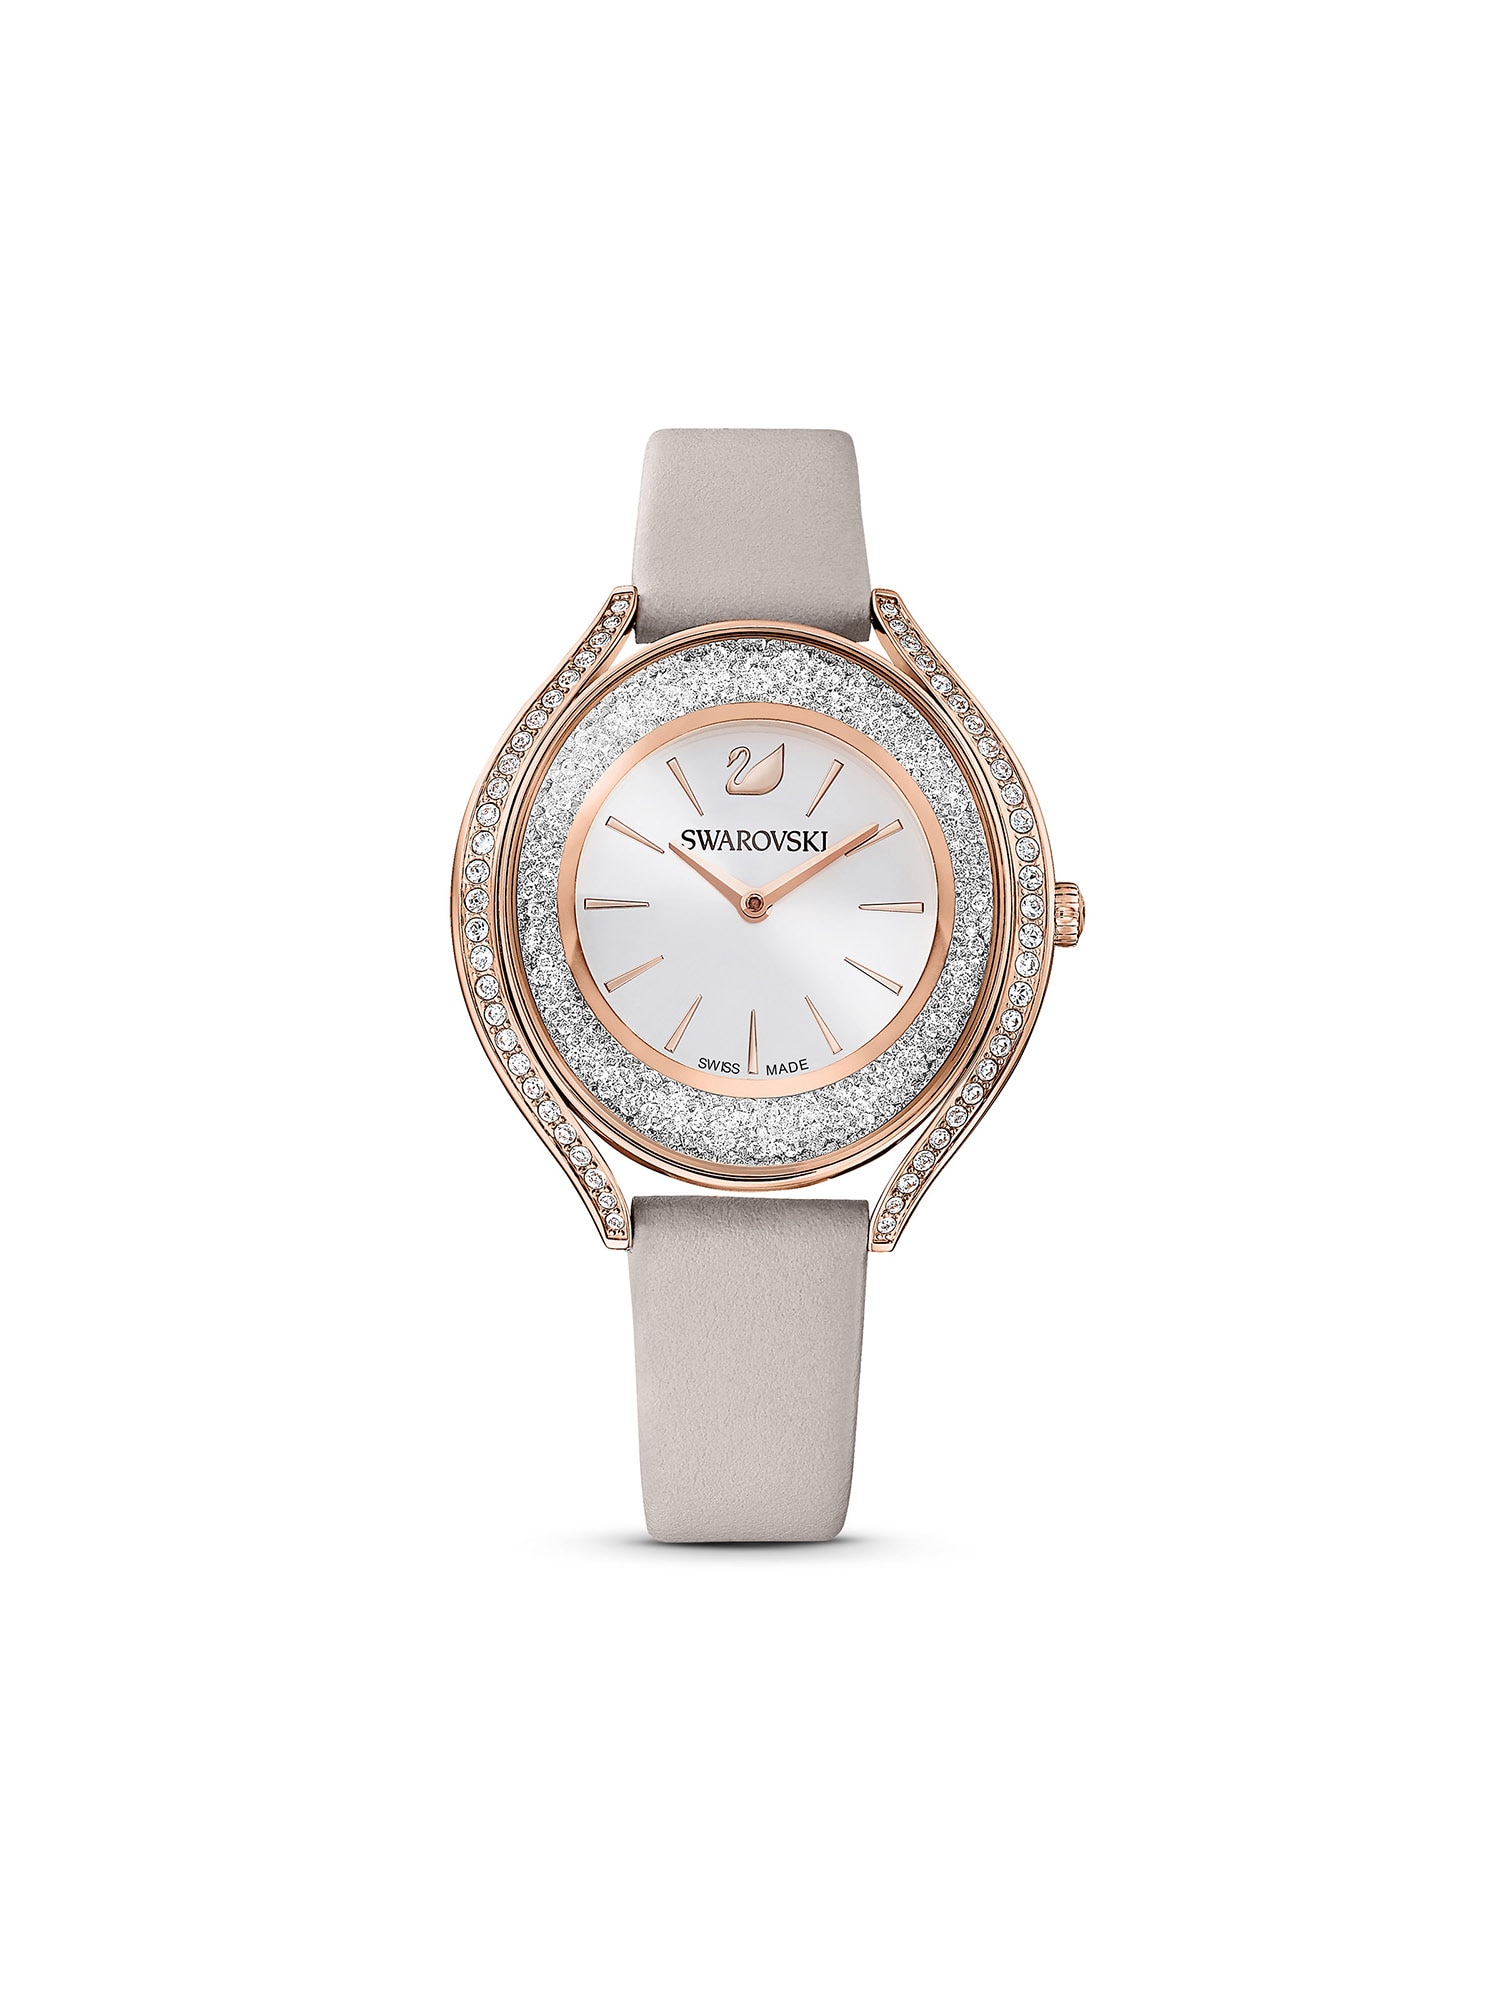 Swarovski Analoginis (įprasto dizaino) laikrodis pilka / rožinio aukso spalva / sidabrinė / skaidri spalva